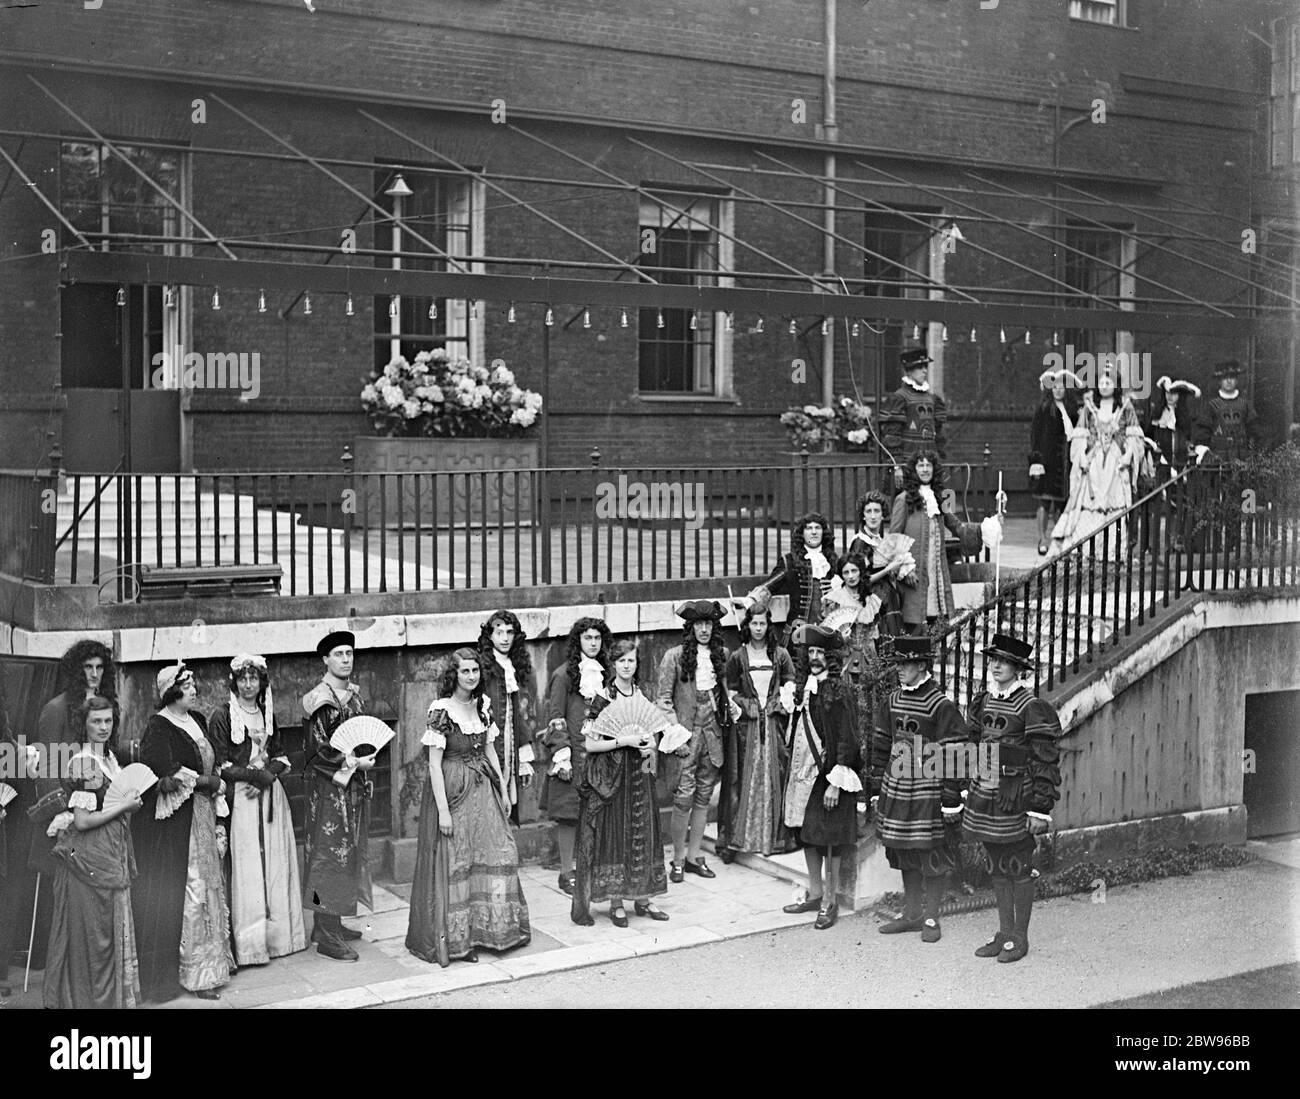 La société répète pour le divertissement dans les jardins de No 10 Downing Street . Beaucoup de gens de la société ont pris part à une répétition de robe d'un divertissement de soirée tenu dans le domaine de la rue Downing n° 10 à l'aide des zones en difficulté dans le nord . 1 groupe de personnages sous le règne de la reine Anne , photographiés dans les jardins du n° 10 . 13 juillet 1932 Banque D'Images